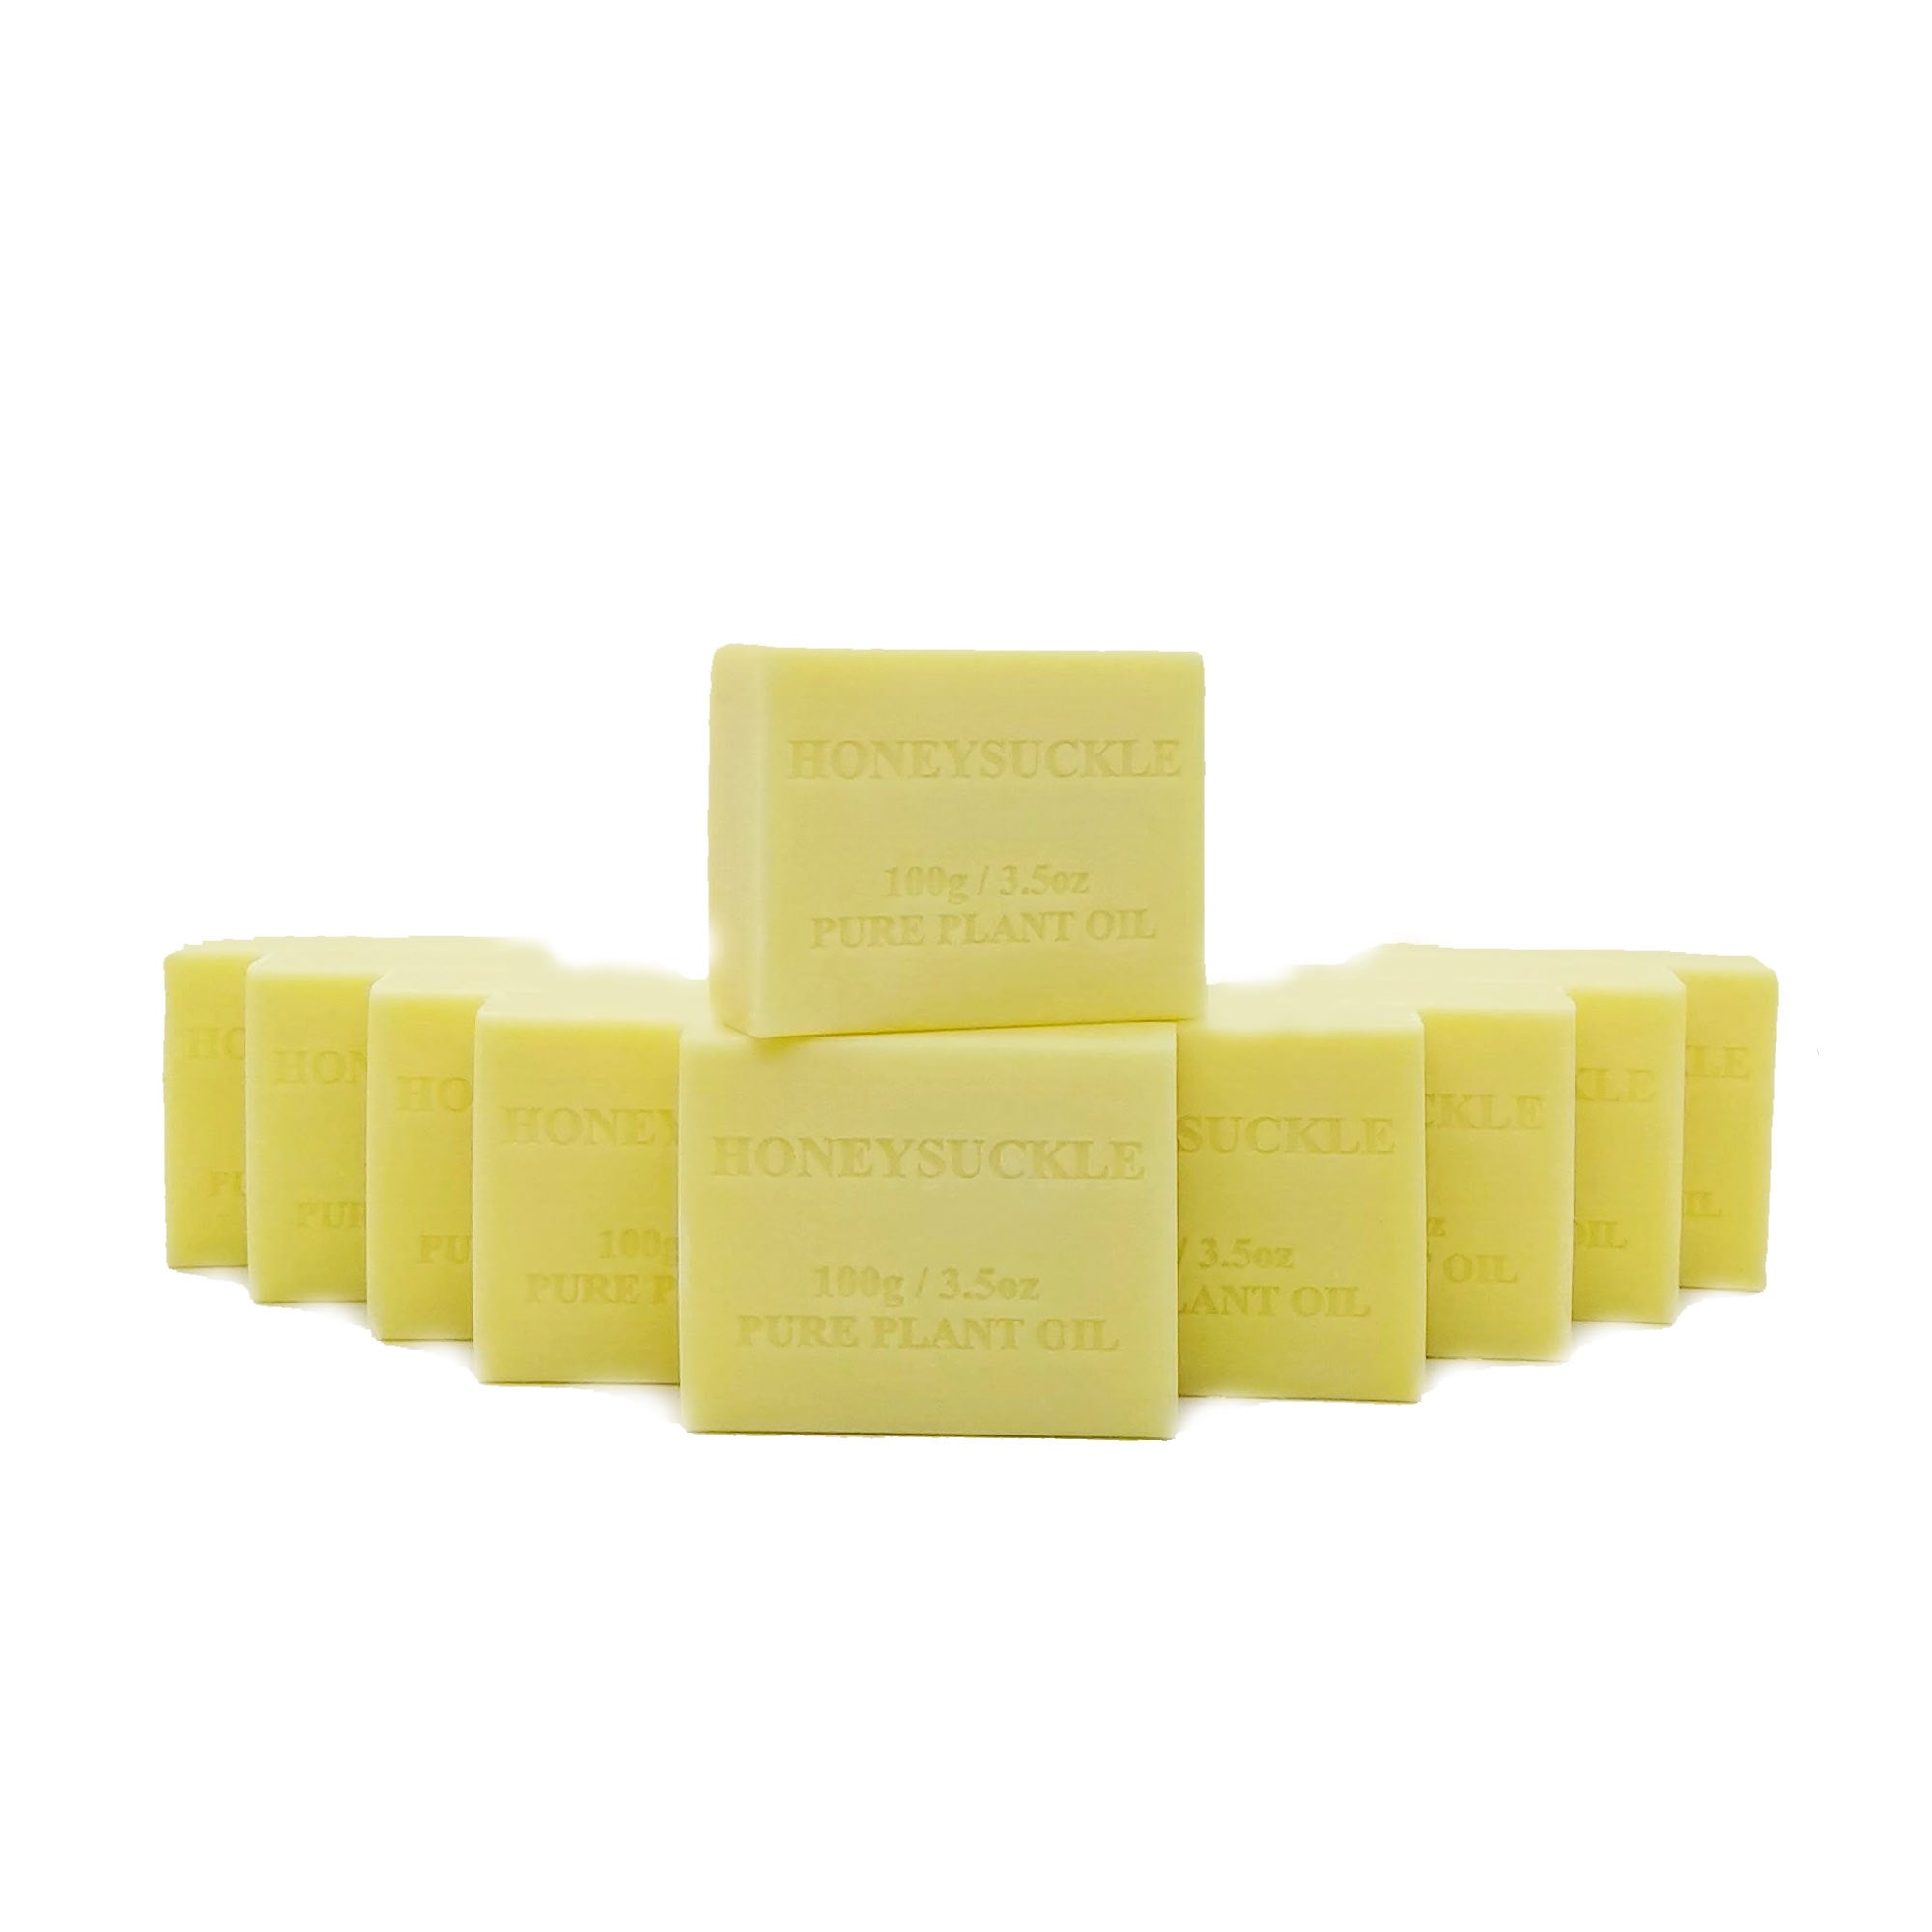 [10 x pack] 100g Plant Oil Soap Honeysuckle Scent Pure Vegetable Base Bar Australian